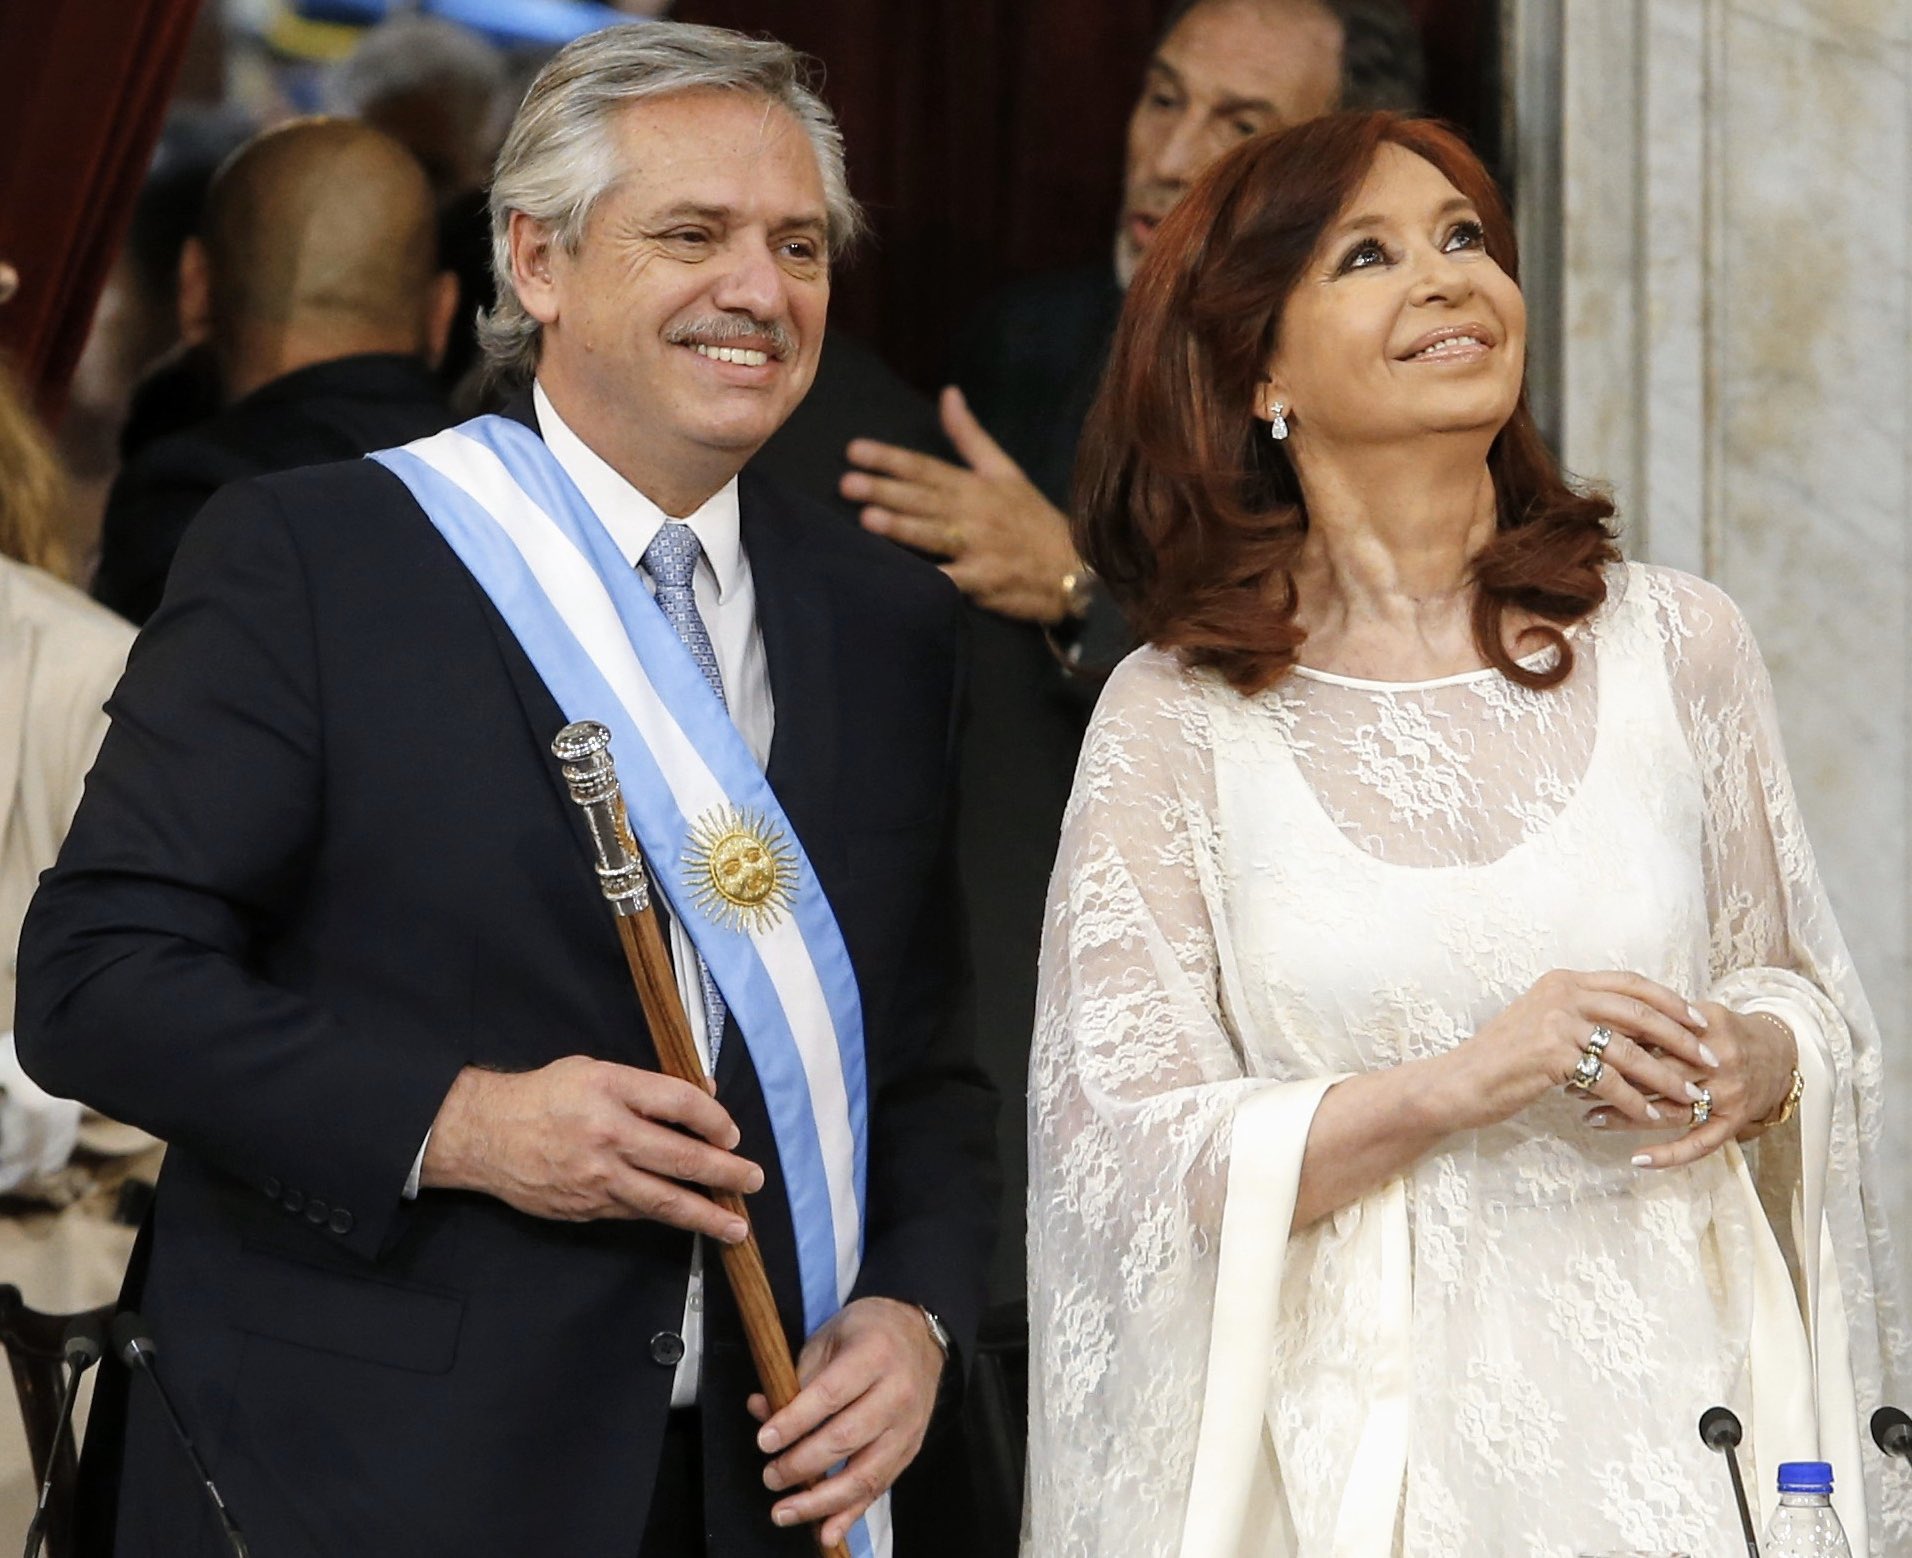 Alberto Fernández asume como presidente de Argentina